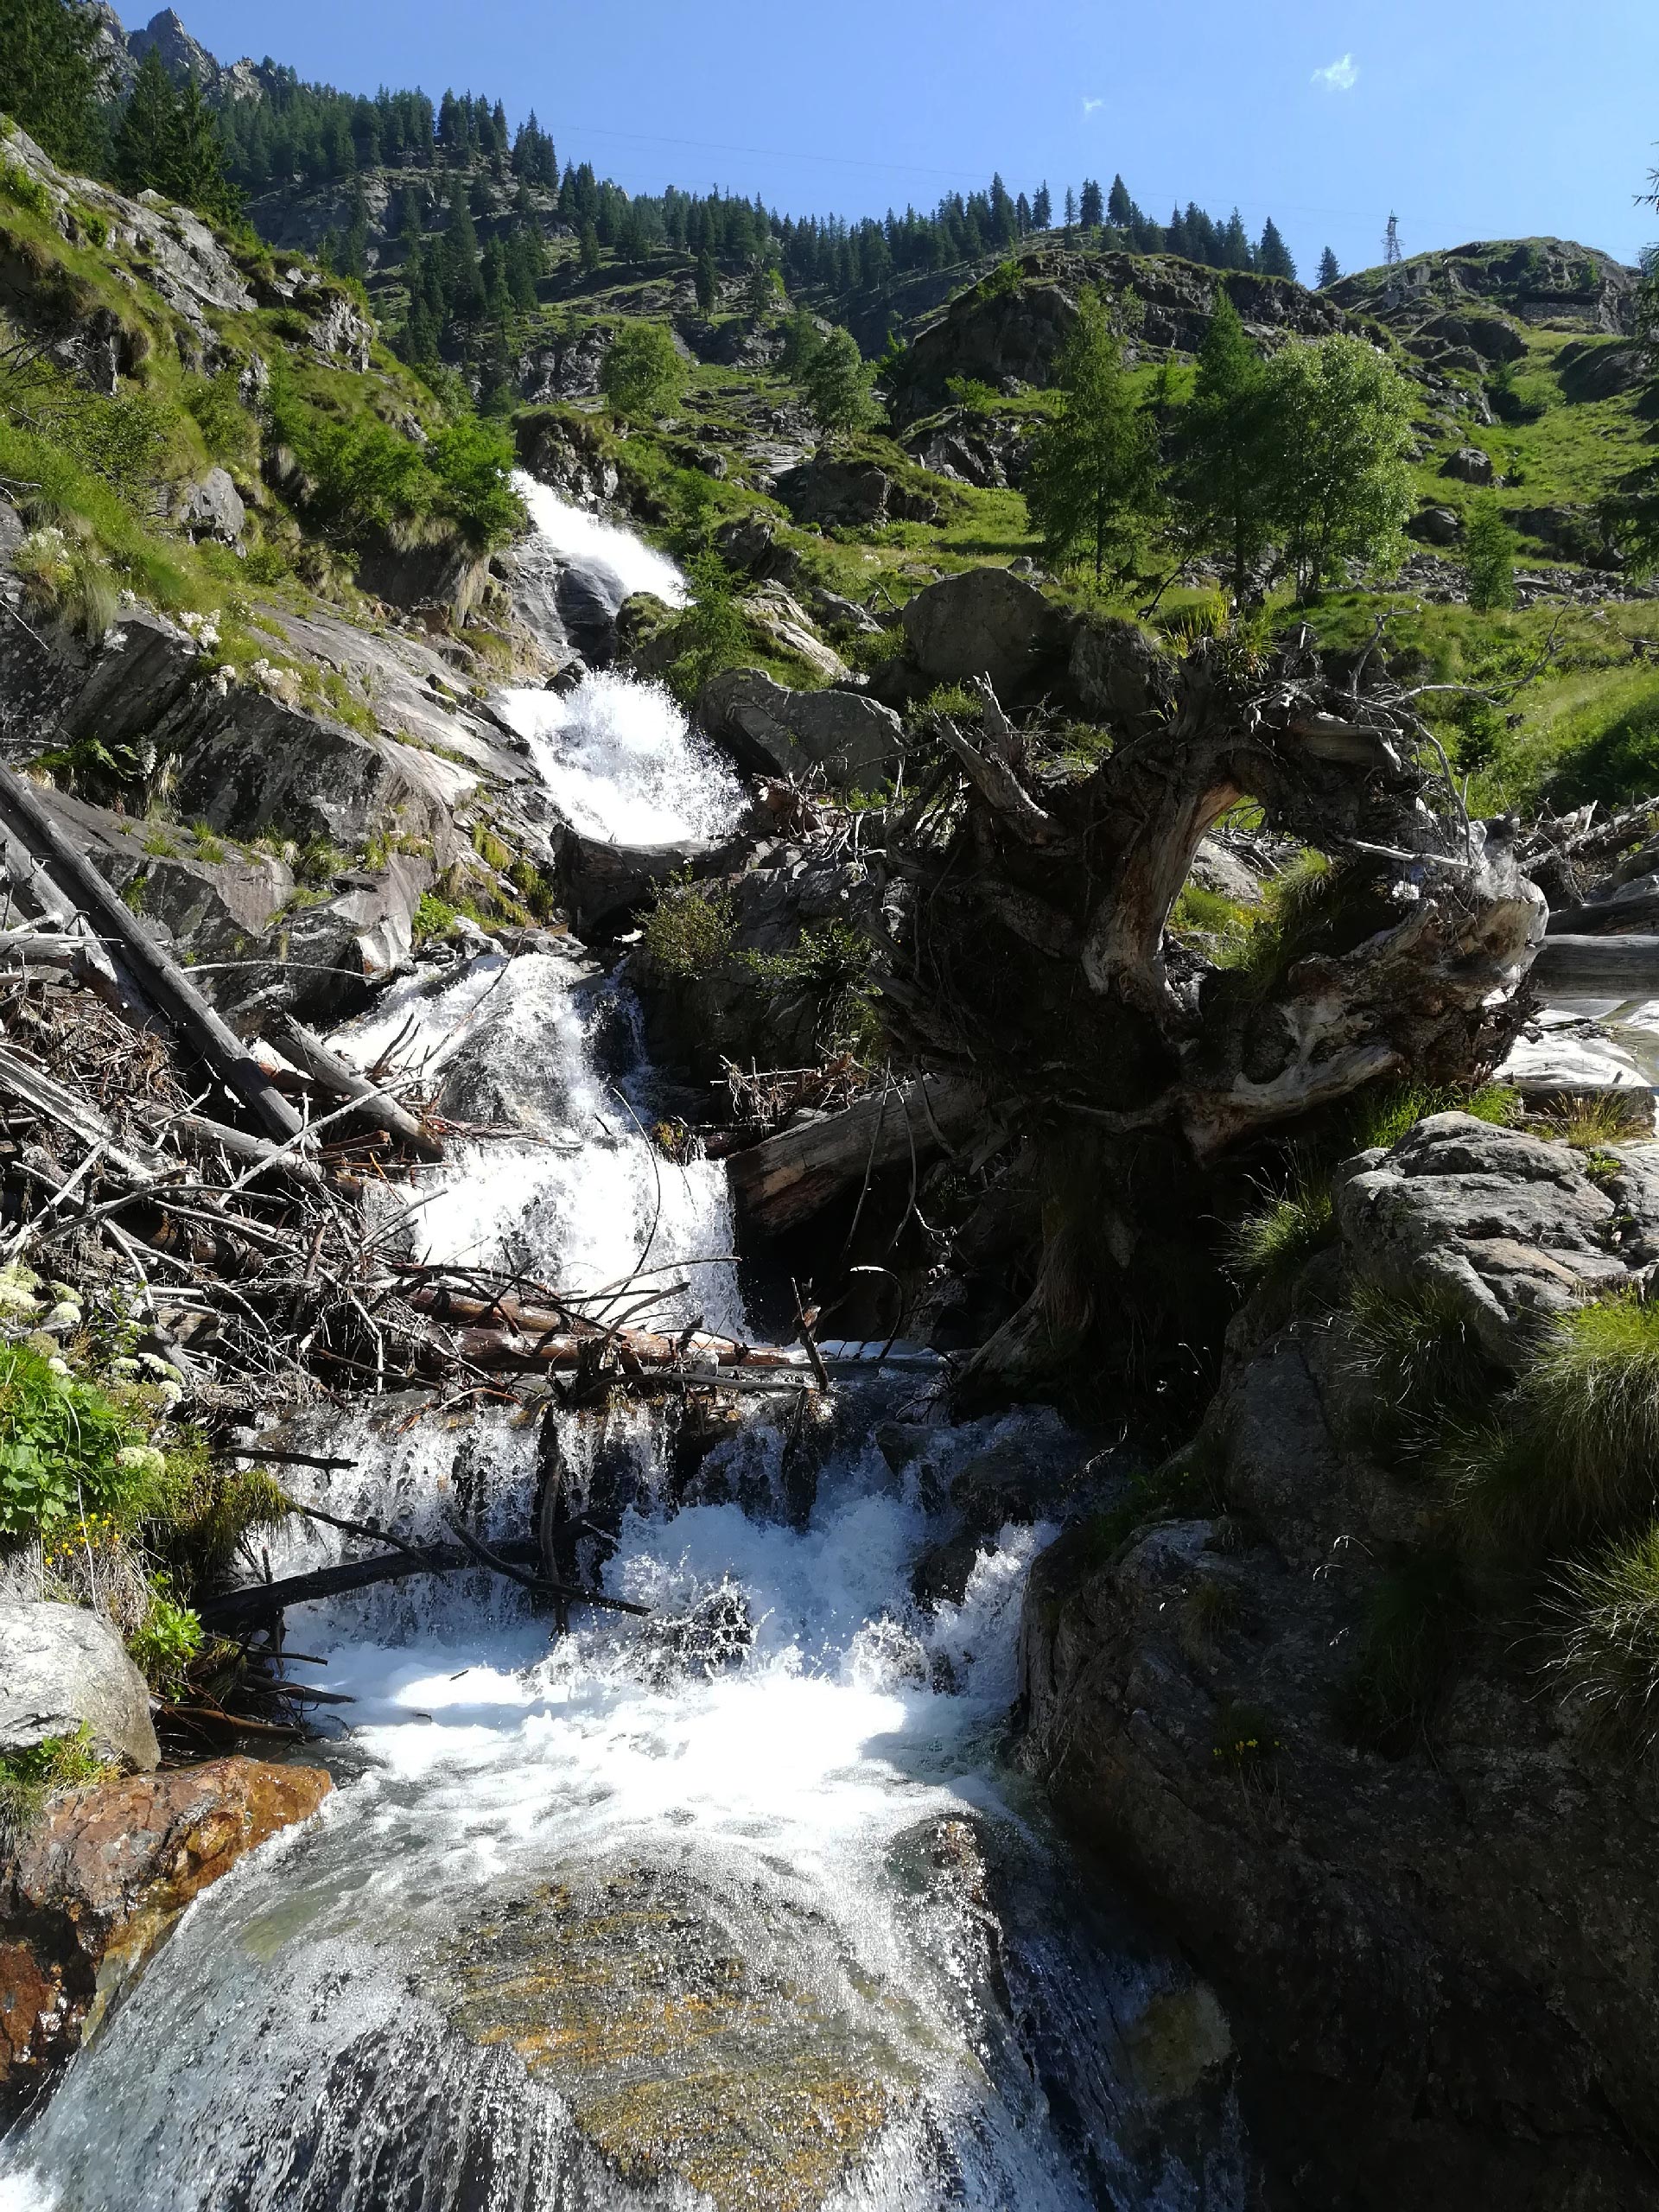 uno scorcio di una cascata nei pressi del lago Campiccioli, Valle Antrona, Piemonte